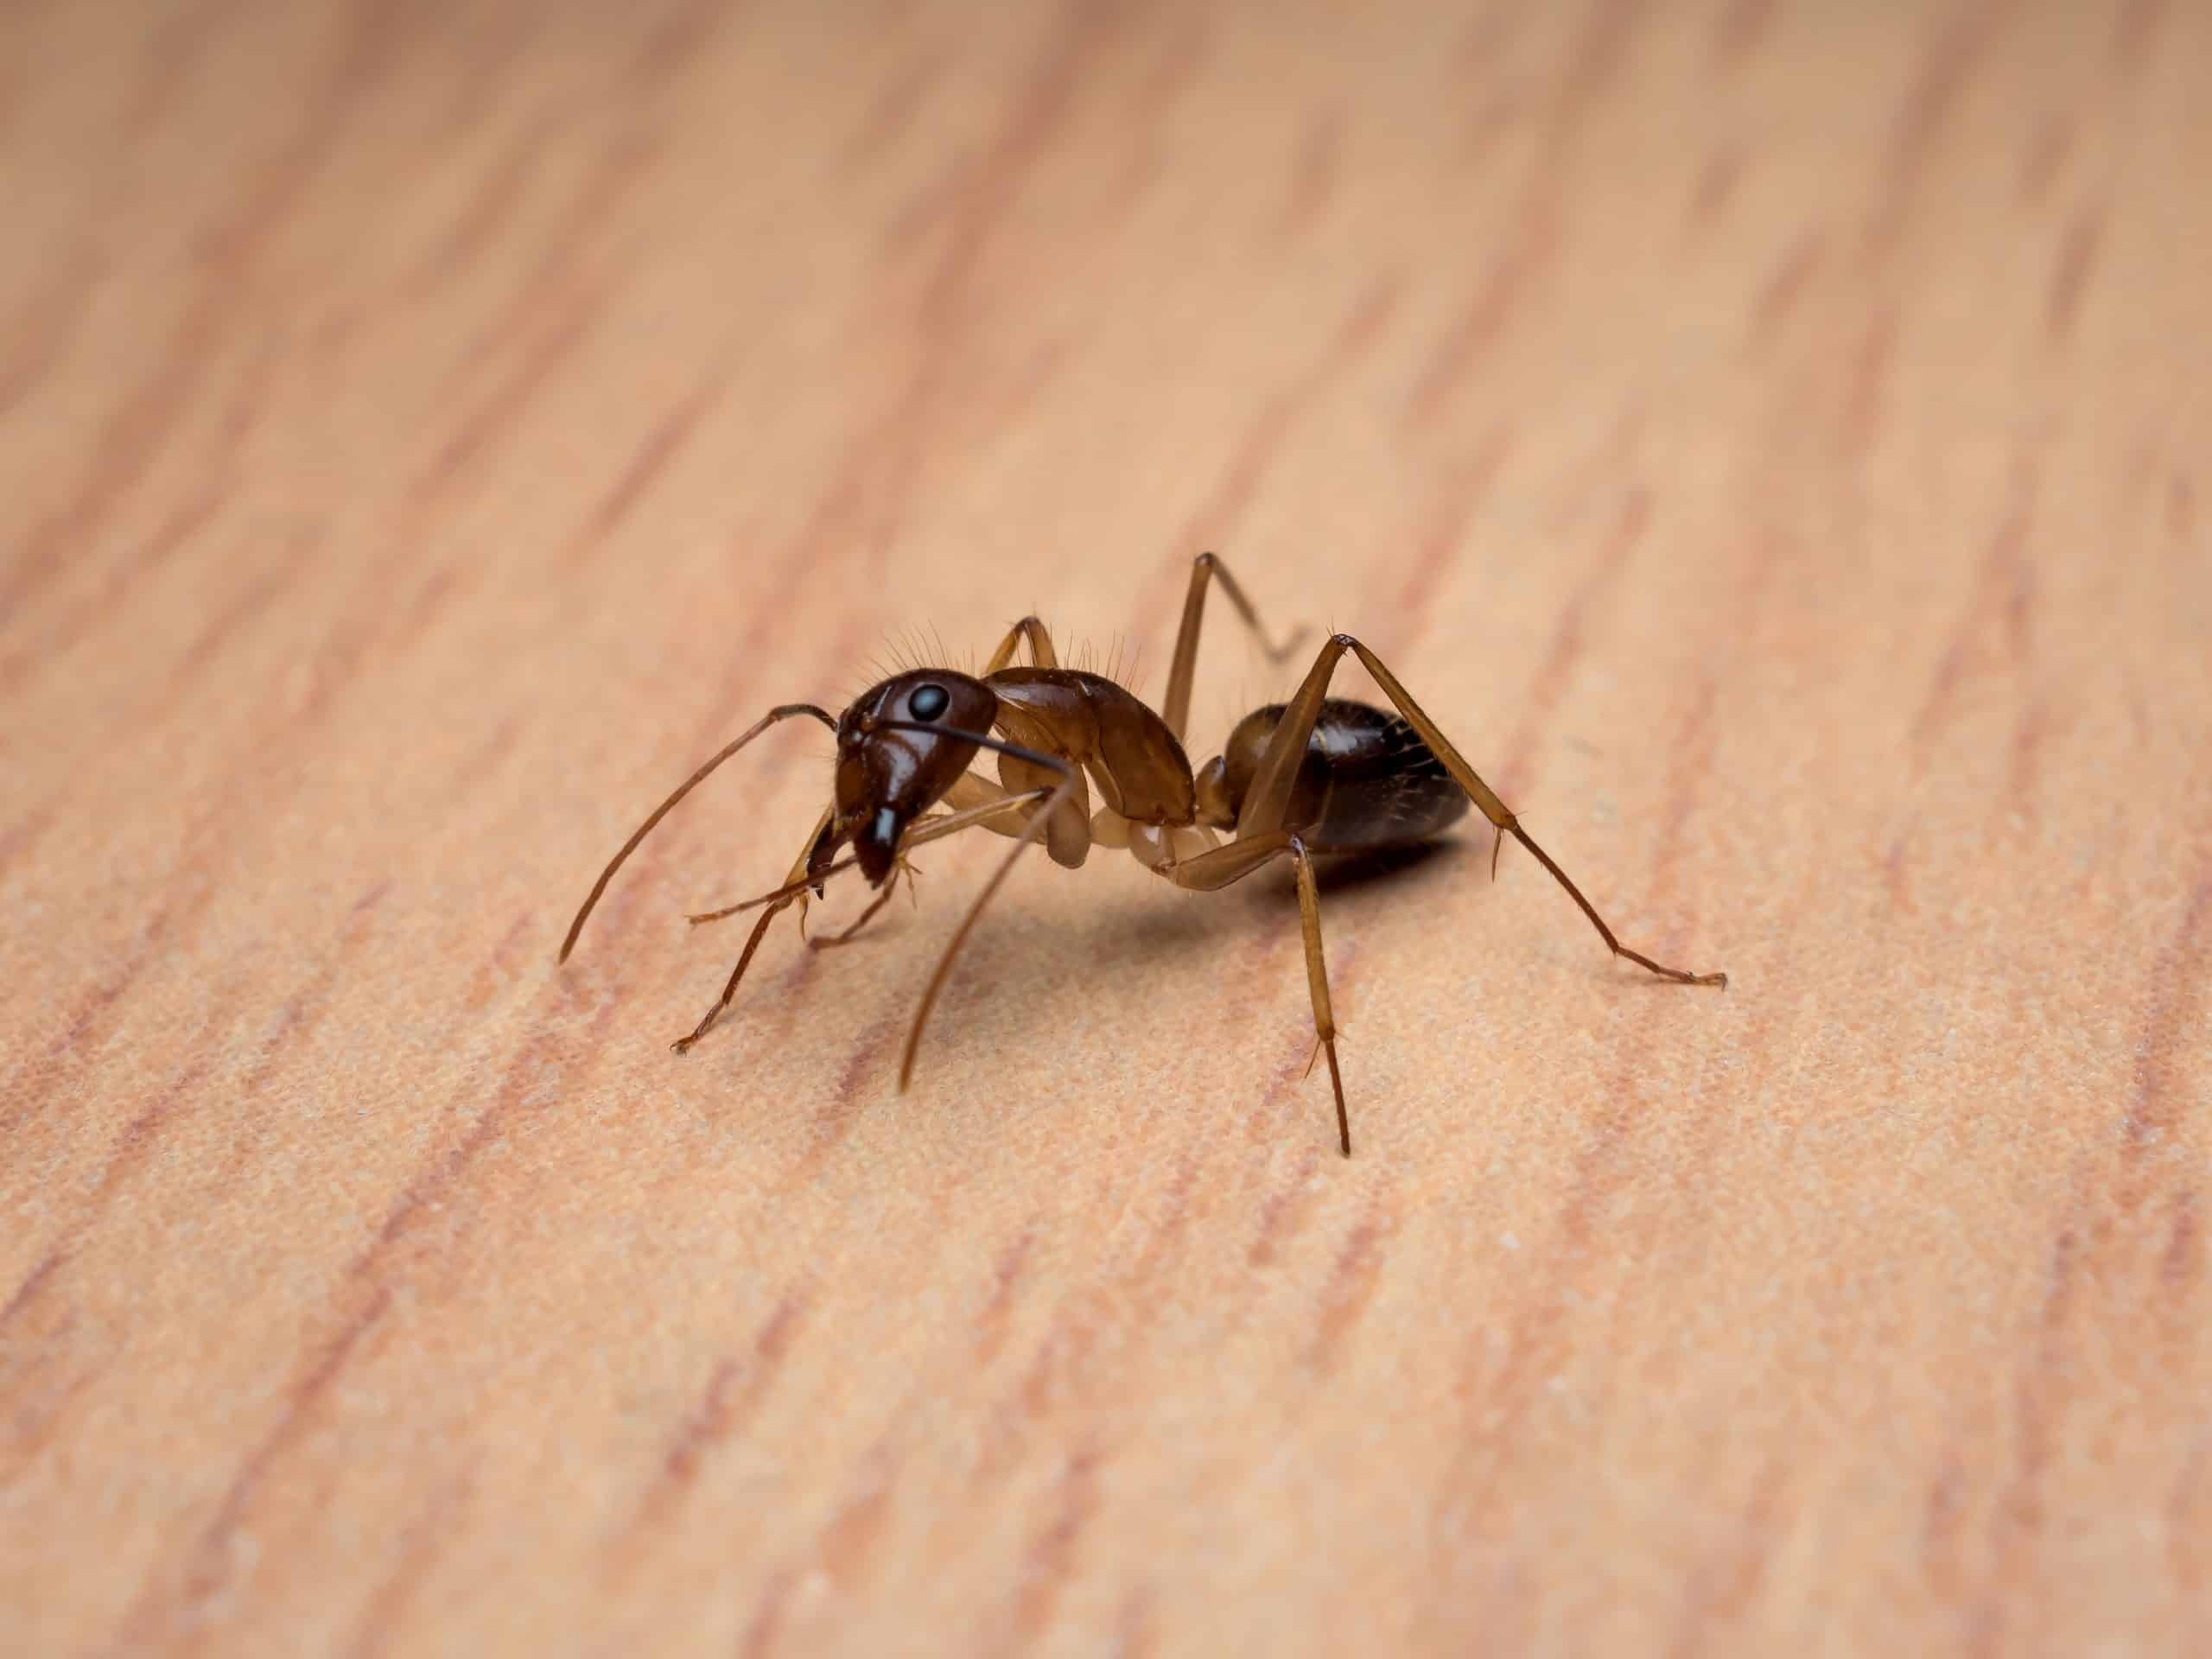 carpenter ant scaled